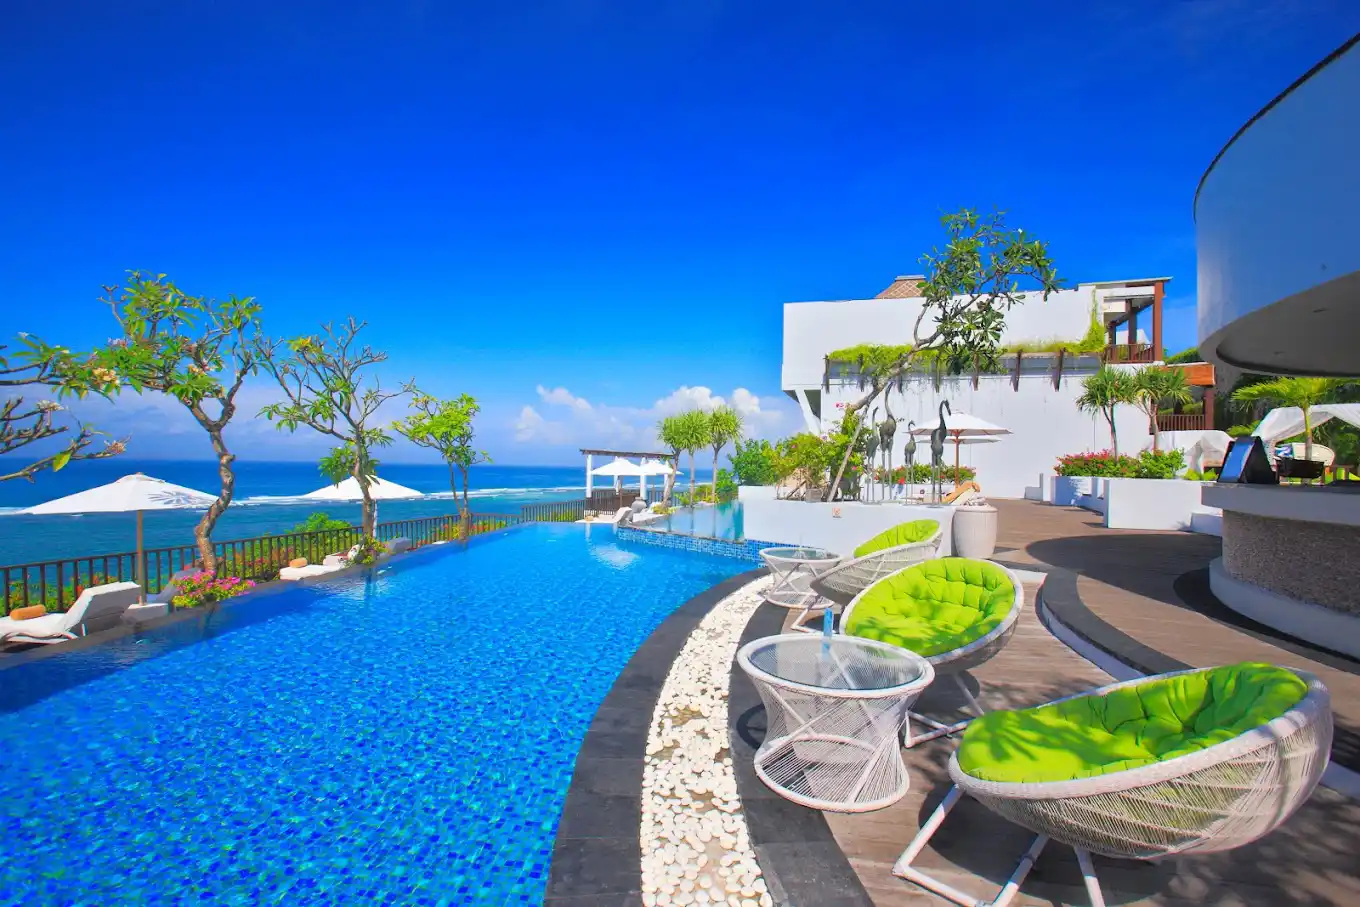 hotel bintang 5 di bali dengan private beach - Samabe Bali Suites